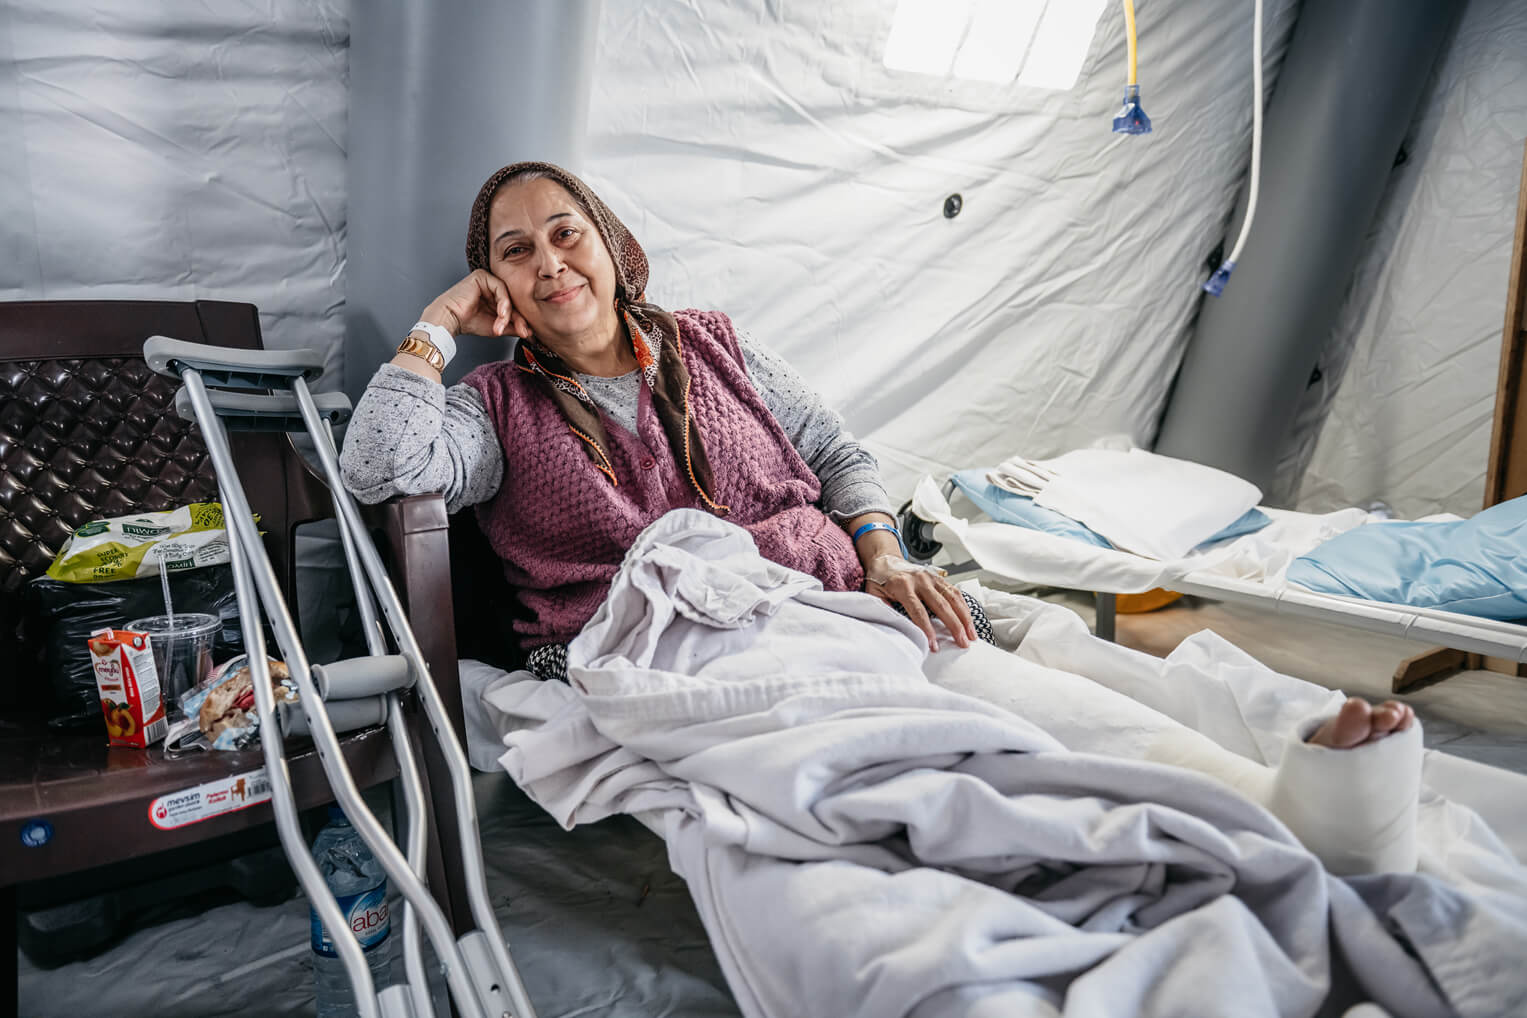 Sare* vino a nuestro hospital con una pierna fracturada al tratar de escapar de su departamento por una ventana durante el terremoto.